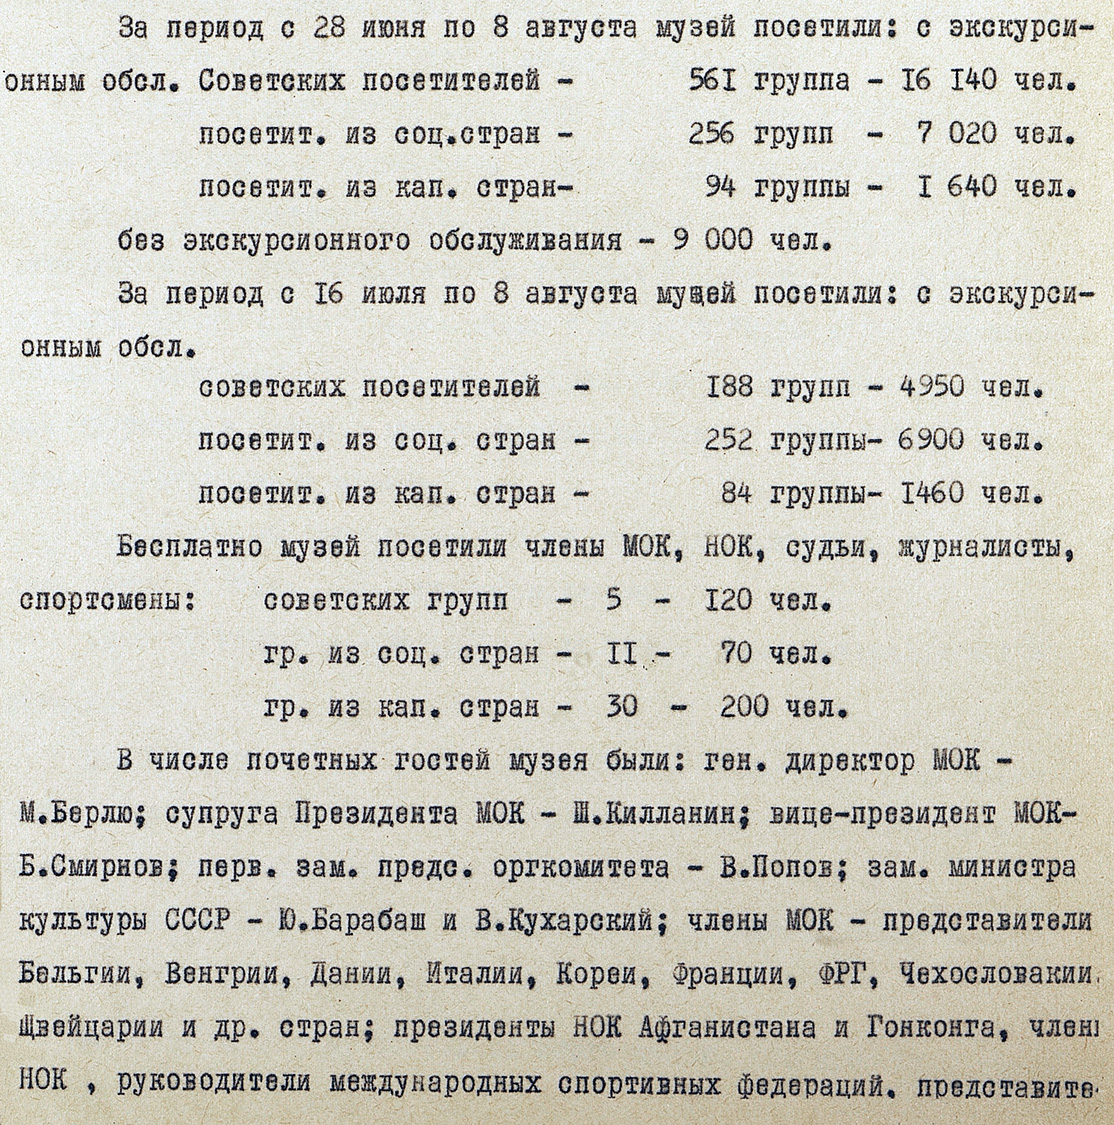 Репродукция к басне 1 «Конь и всадник» И.А. Крылова.